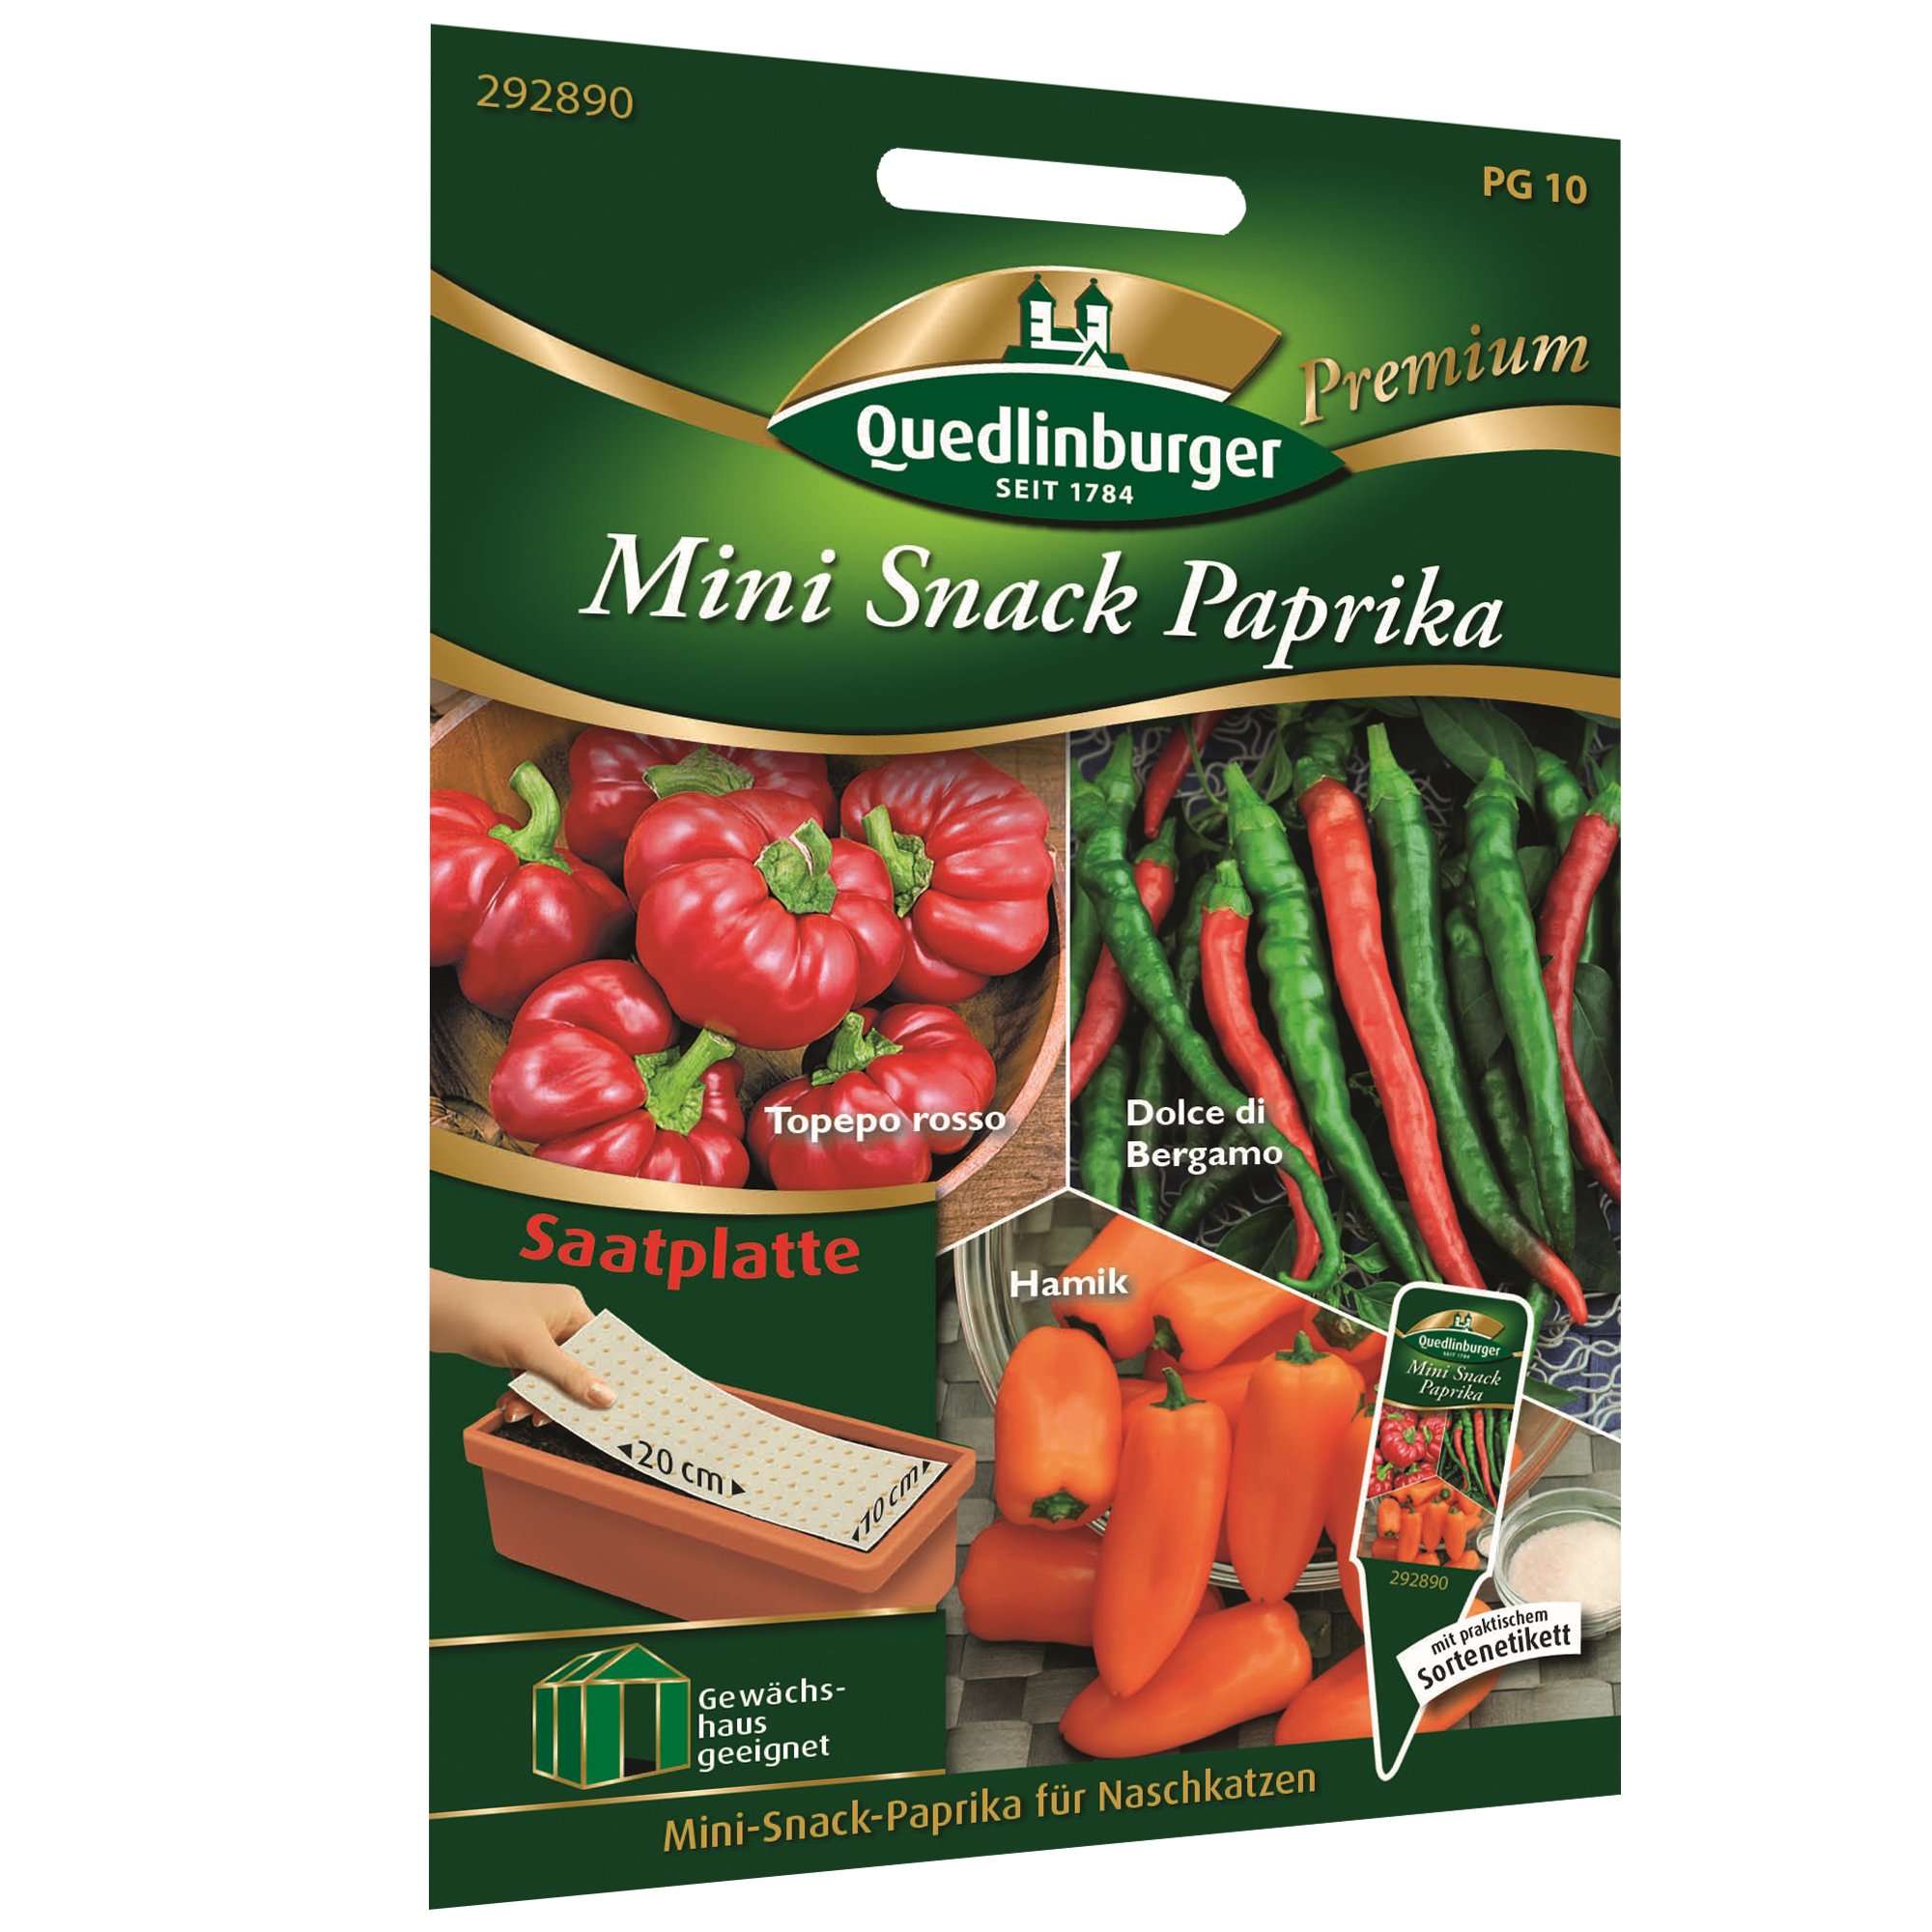 Mini Snack Paprika Saatplatte Mischung + product picture